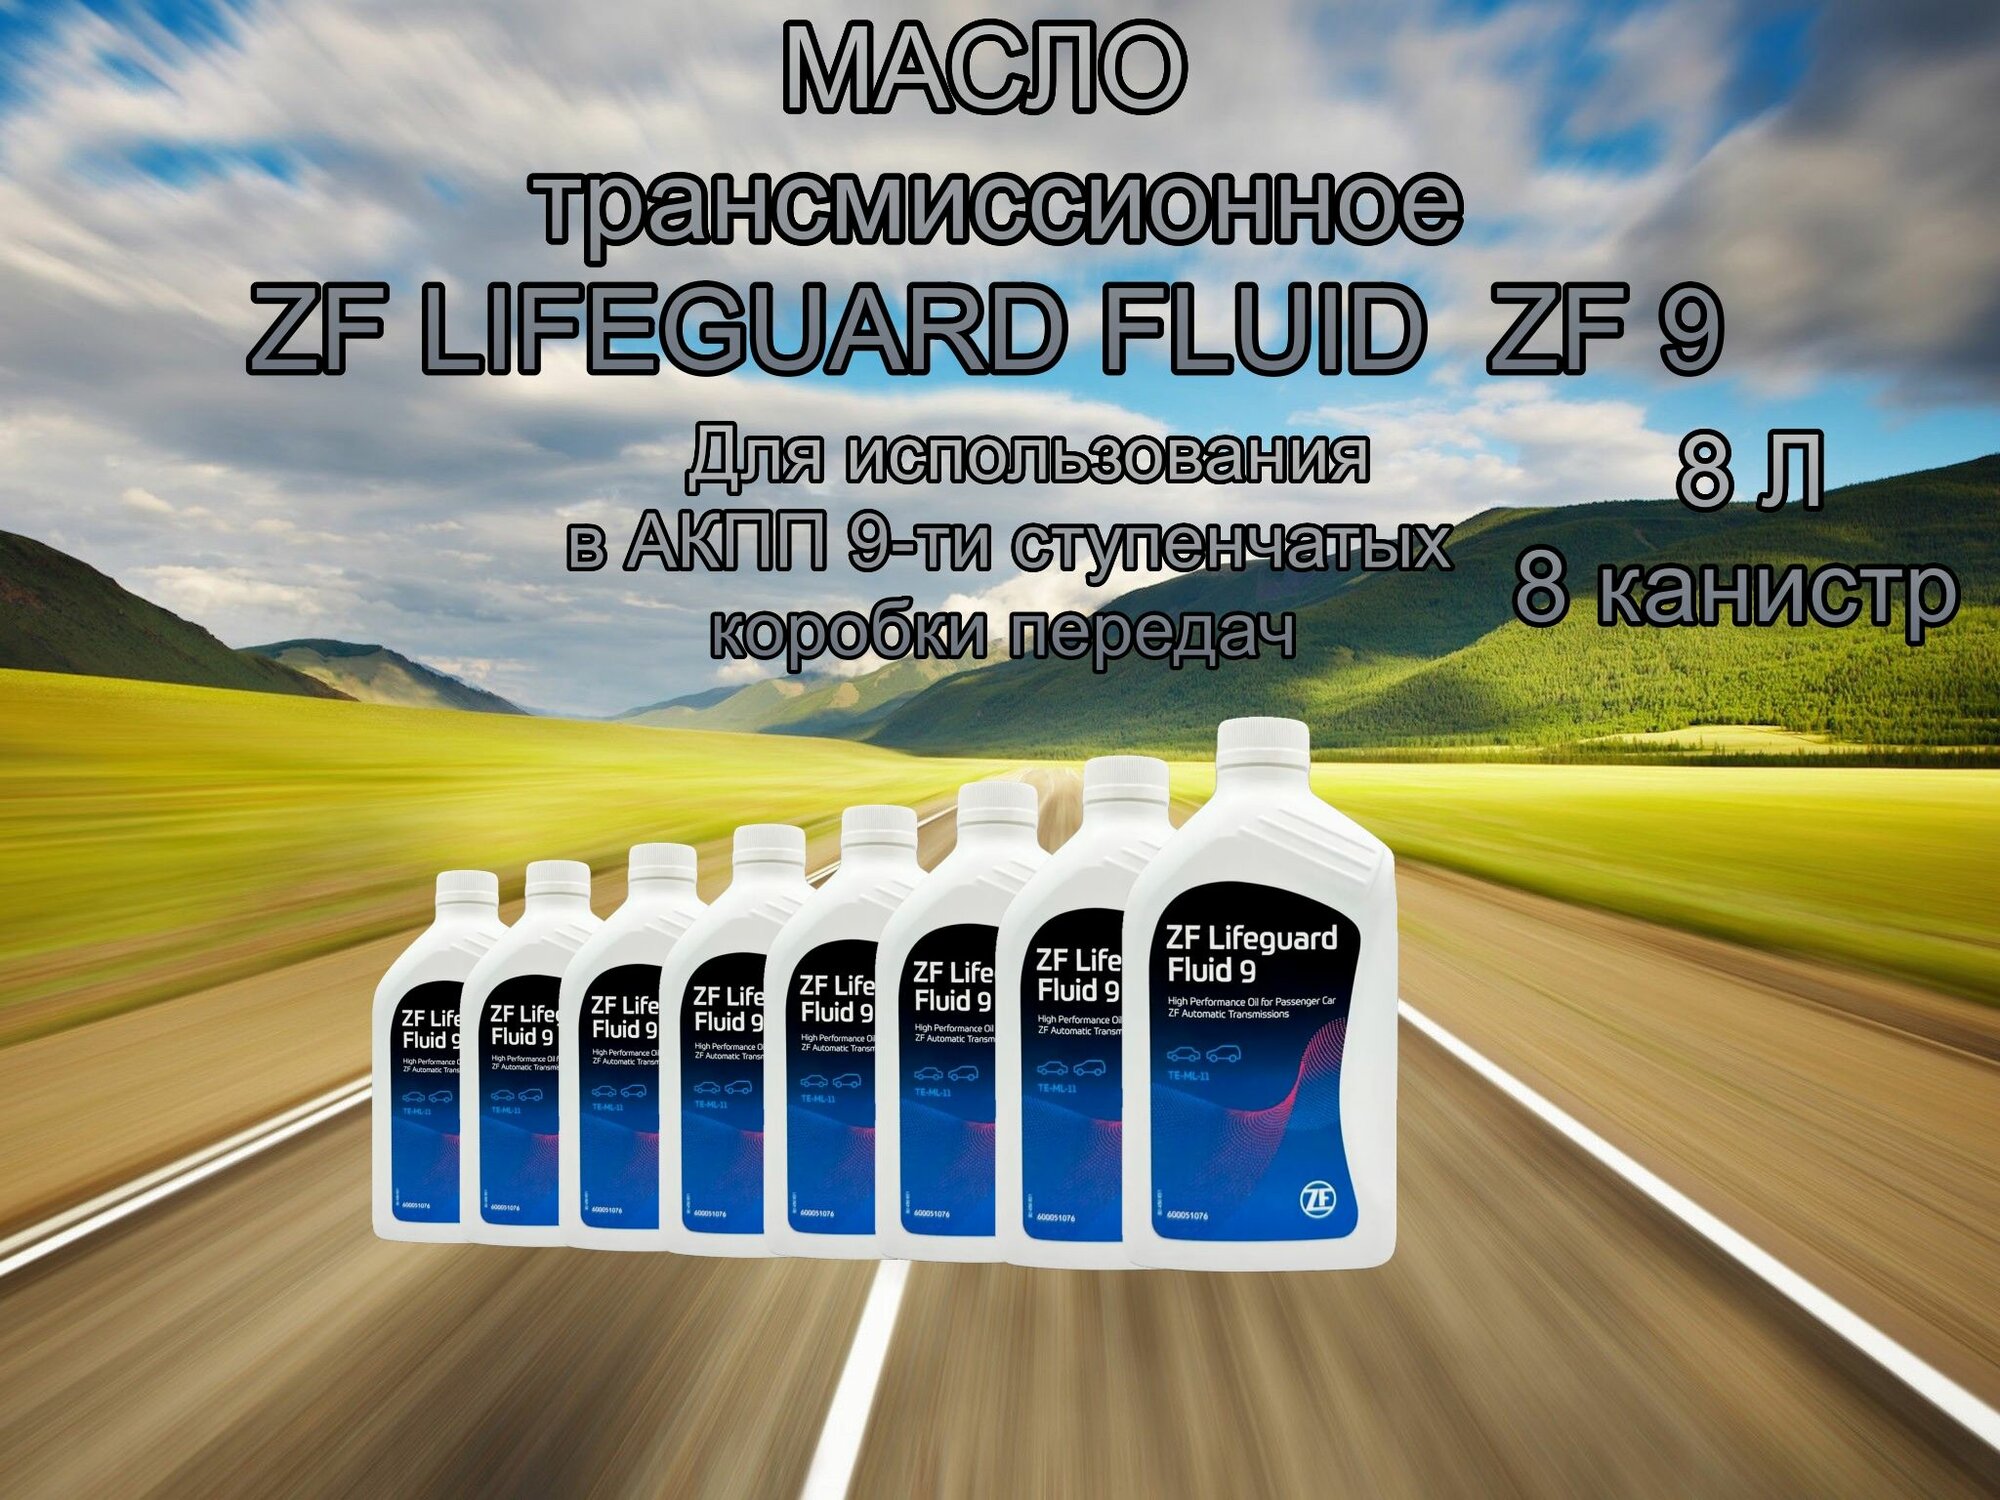 Масло трансмиссионное ZF LIFEGUARD FLUID 9HP ATF 1л AA01500001 / 8 штук / 8 литров